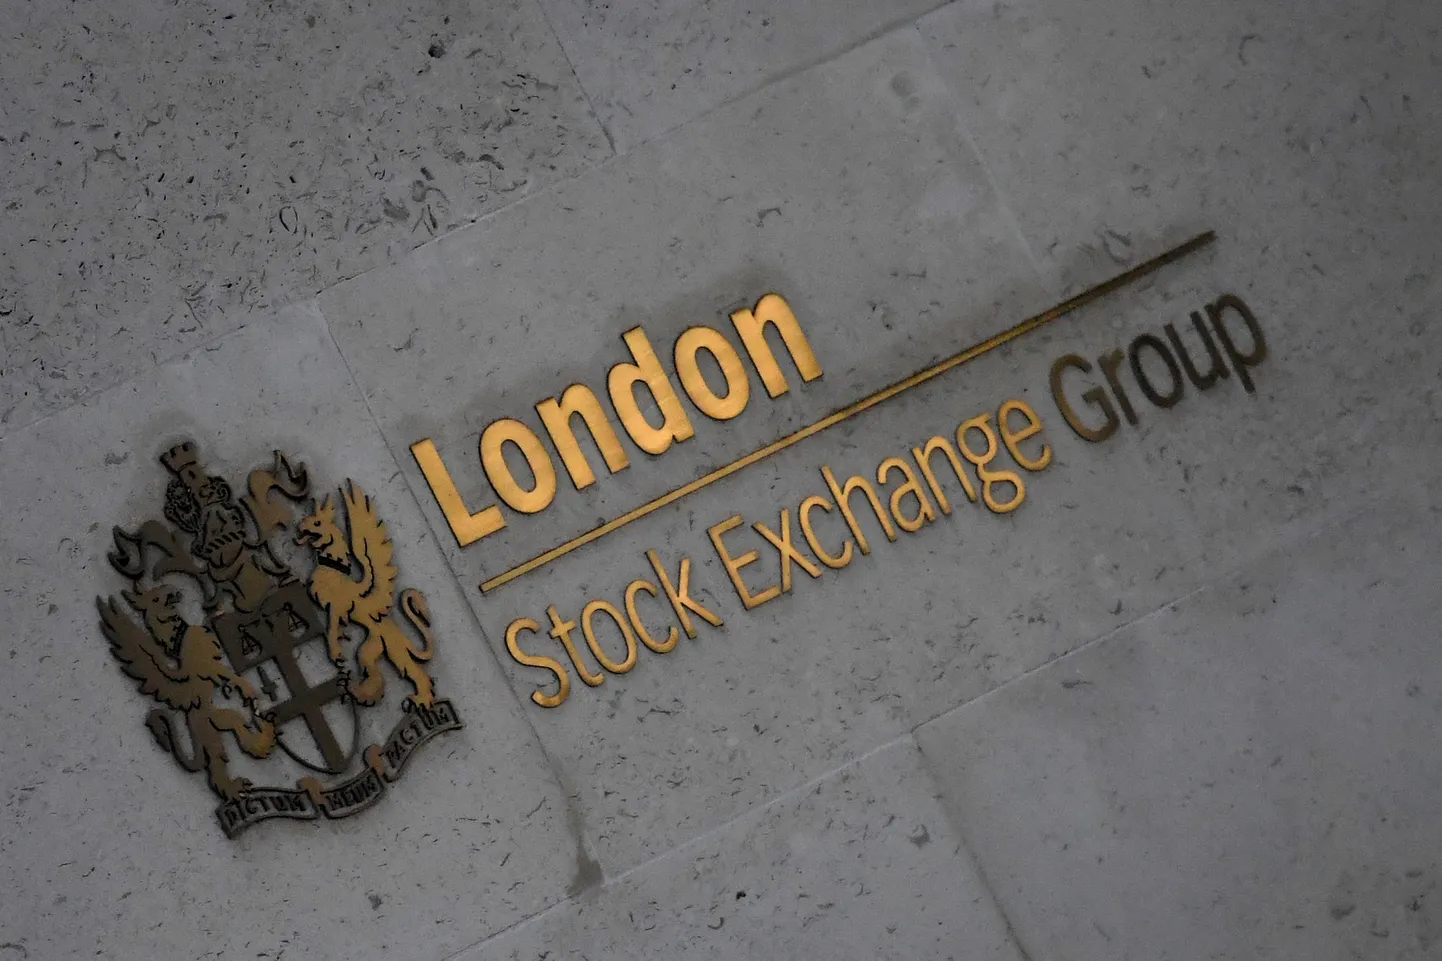 Londoni börsil käis esmaspäeval vilgas tõus.